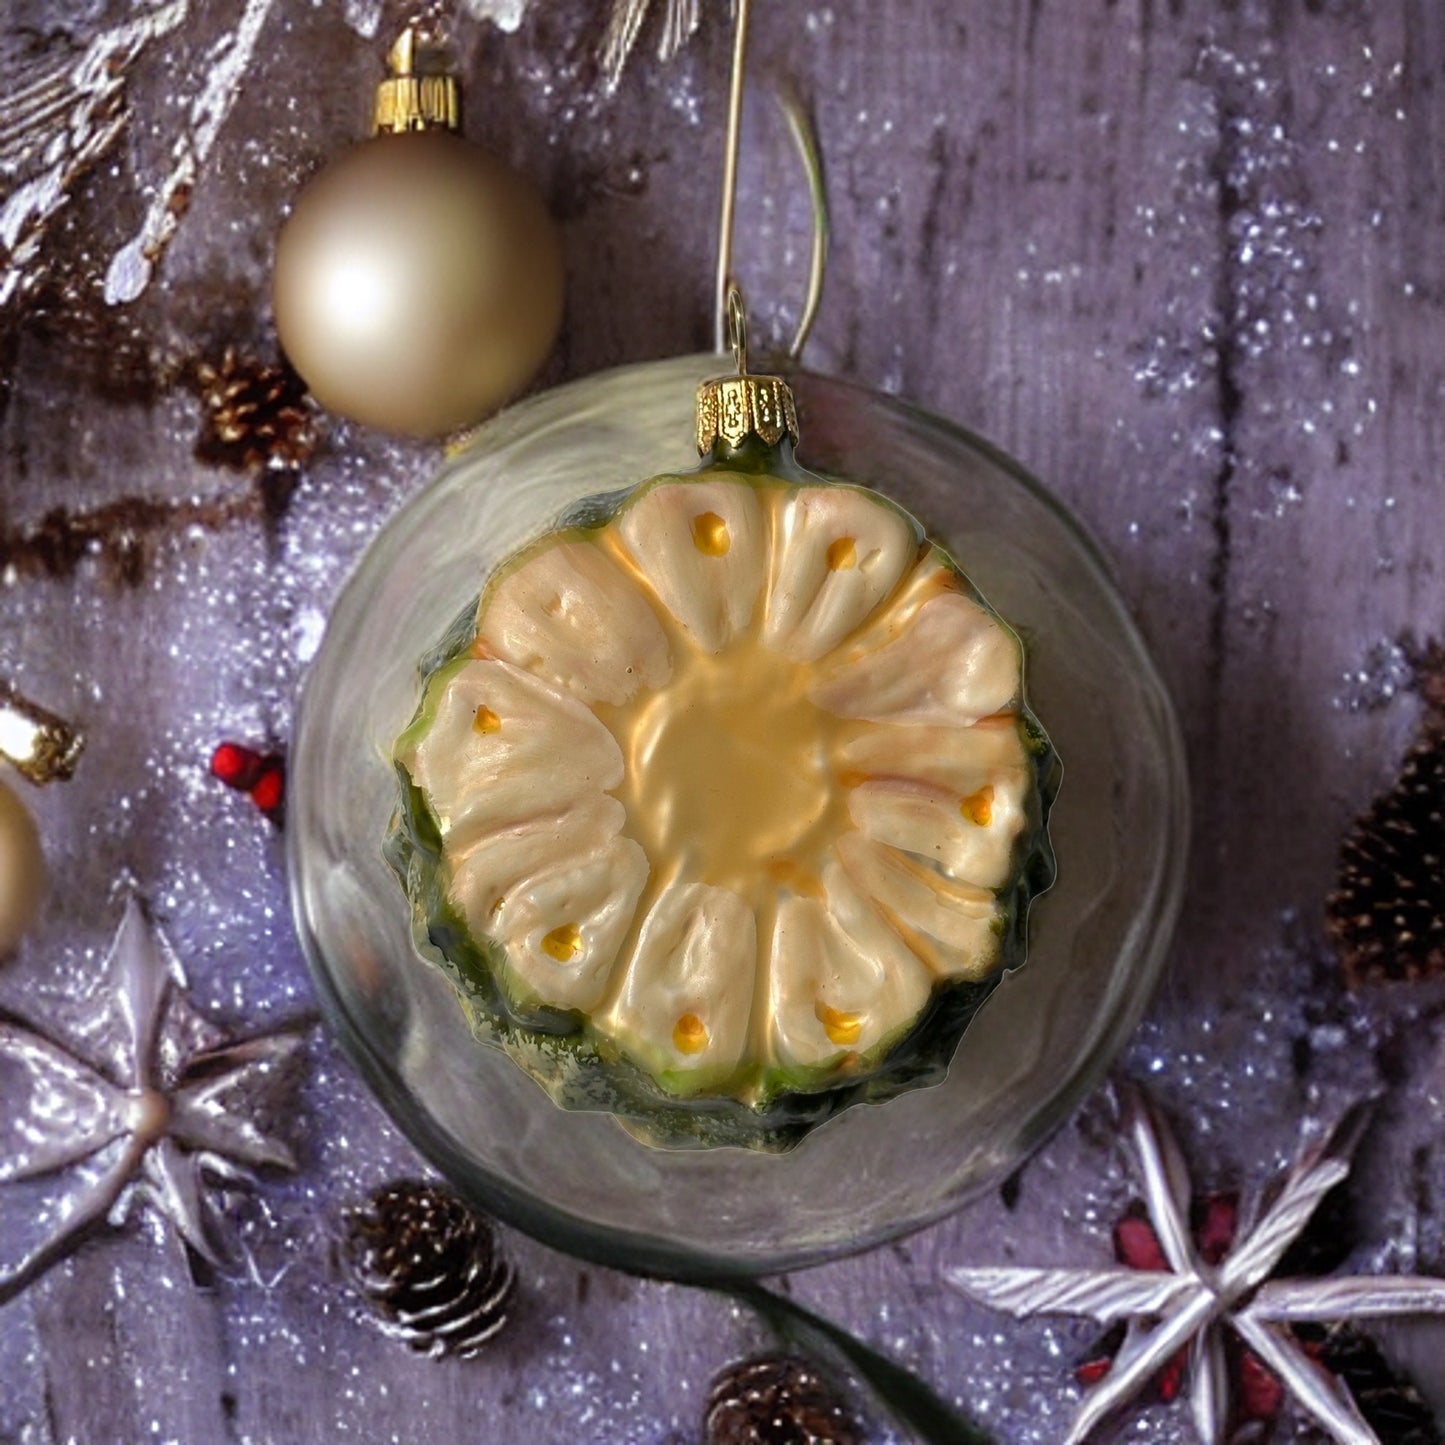 Ananasscheibe Christbaumschmuck Glas Obstform Weihnachten